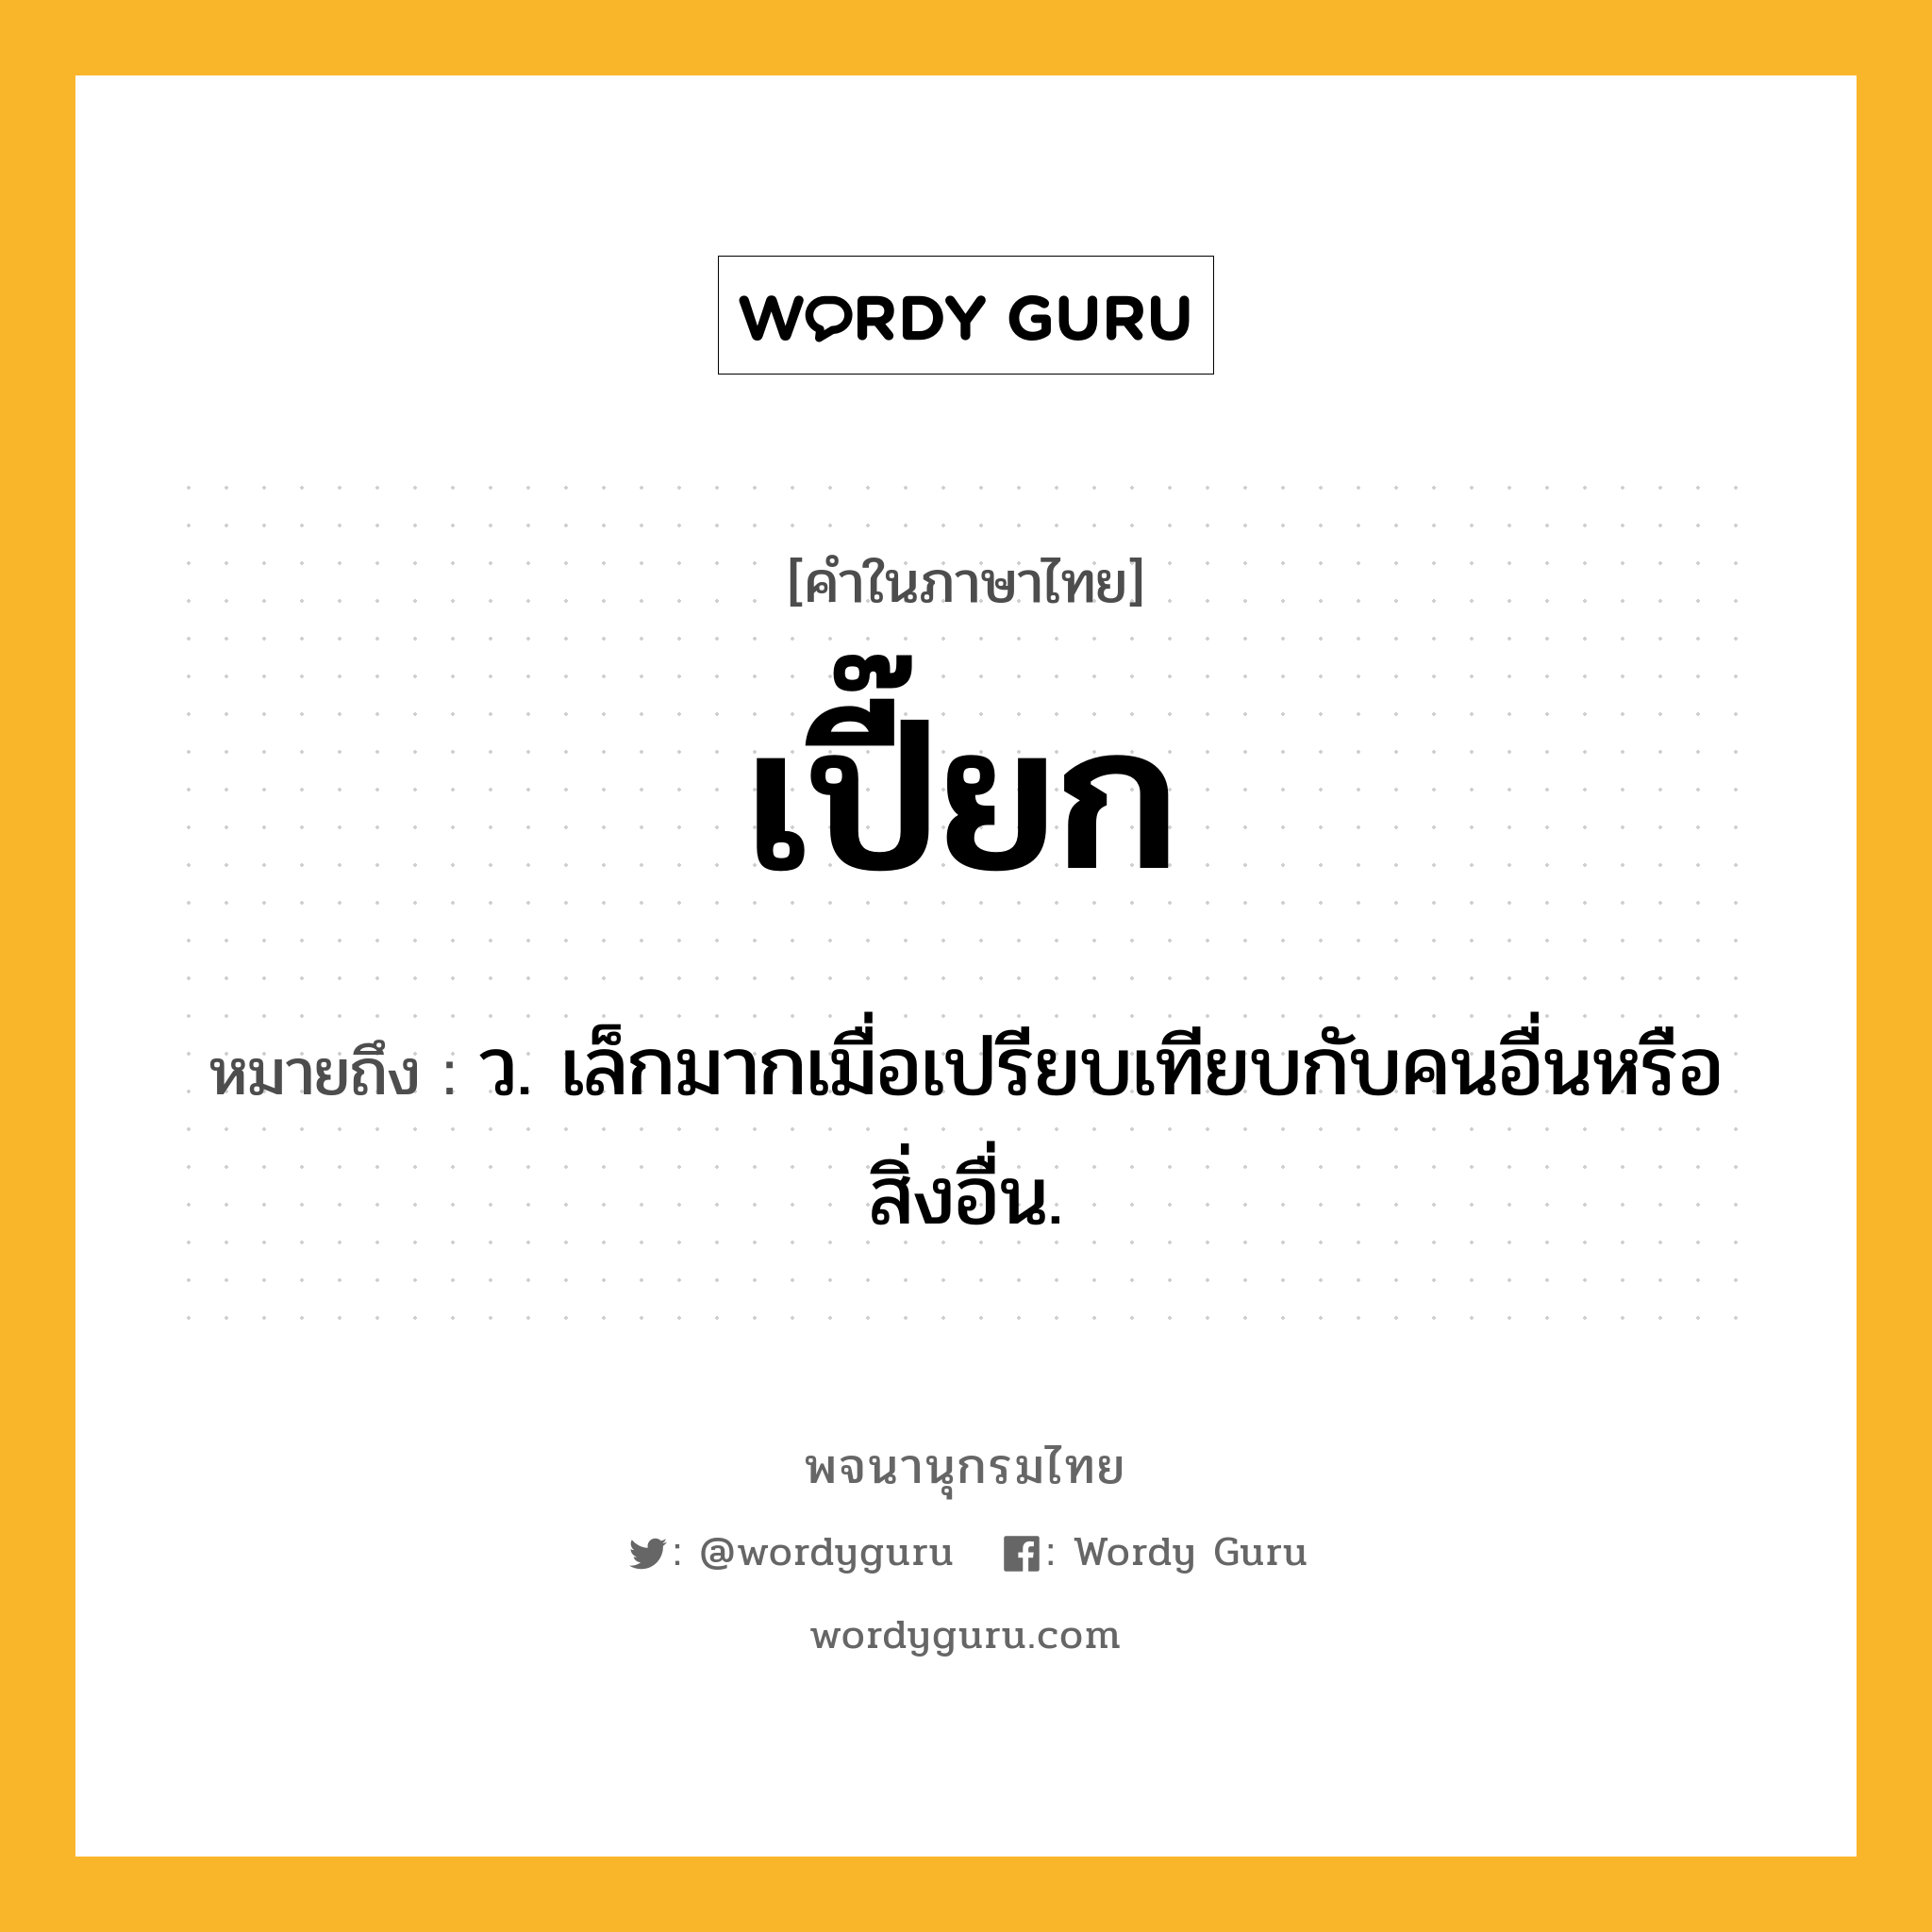 เปี๊ยก ความหมาย หมายถึงอะไร?, คำในภาษาไทย เปี๊ยก หมายถึง ว. เล็กมากเมื่อเปรียบเทียบกับคนอื่นหรือสิ่งอื่น.